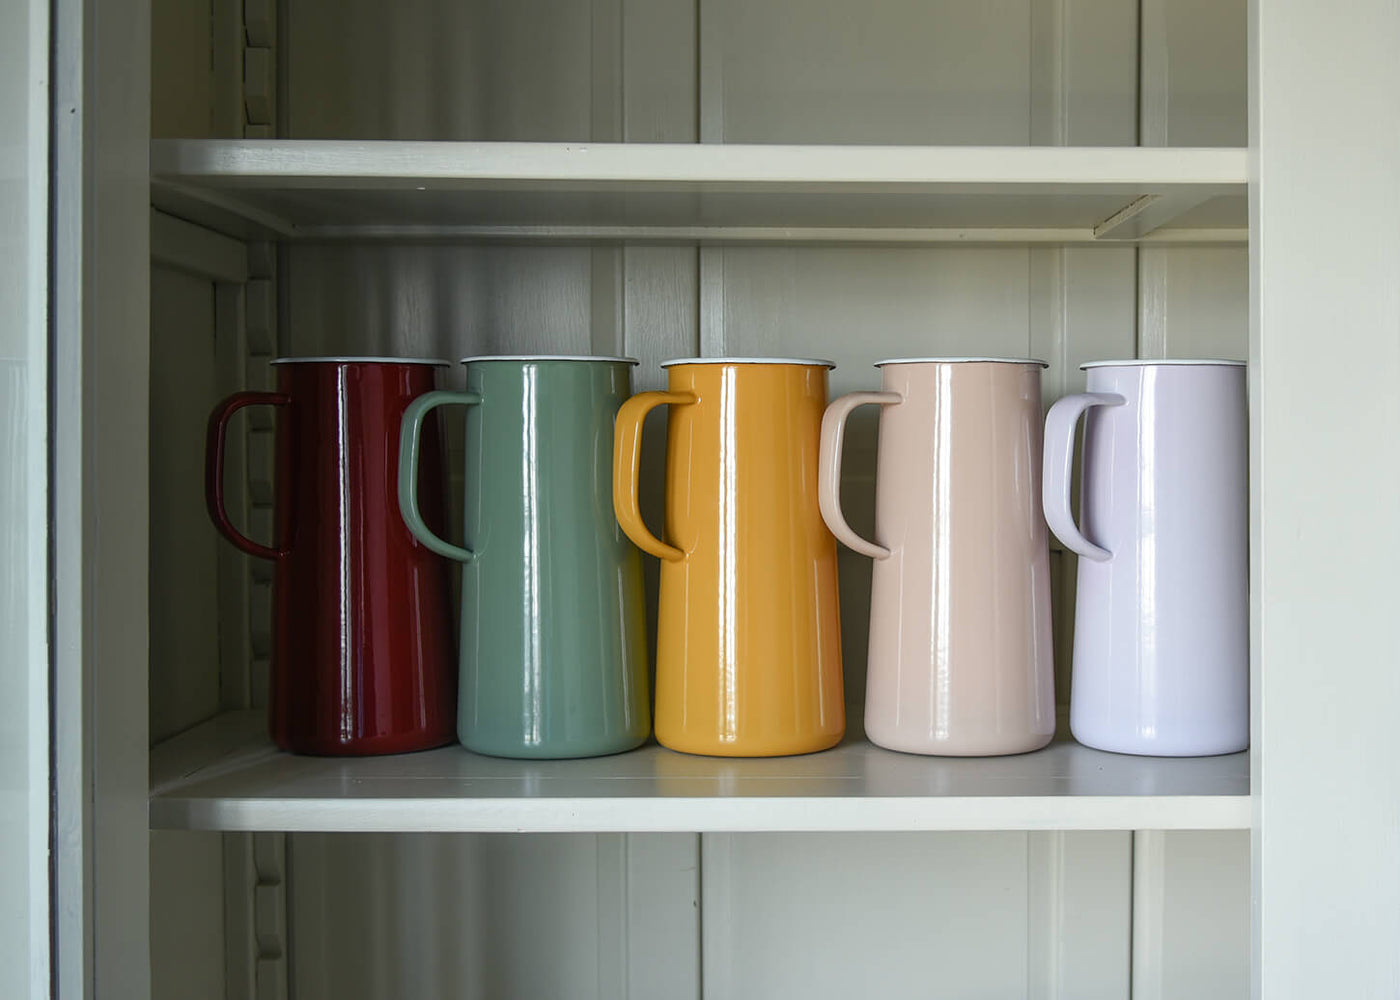 A row of colourful enamel jugs on a shelf